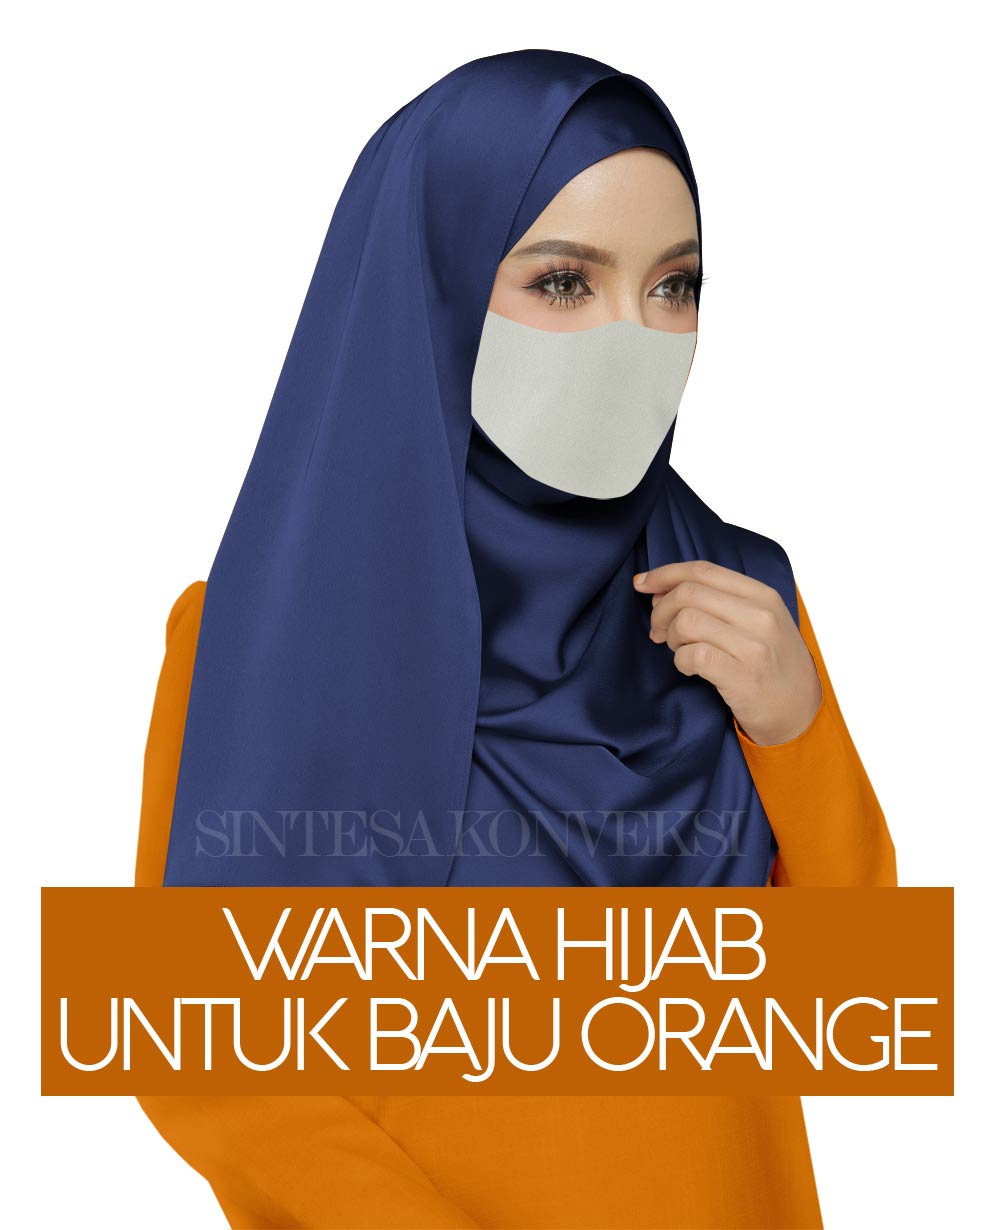 baju orange cocok dengan warna jilbab apa 